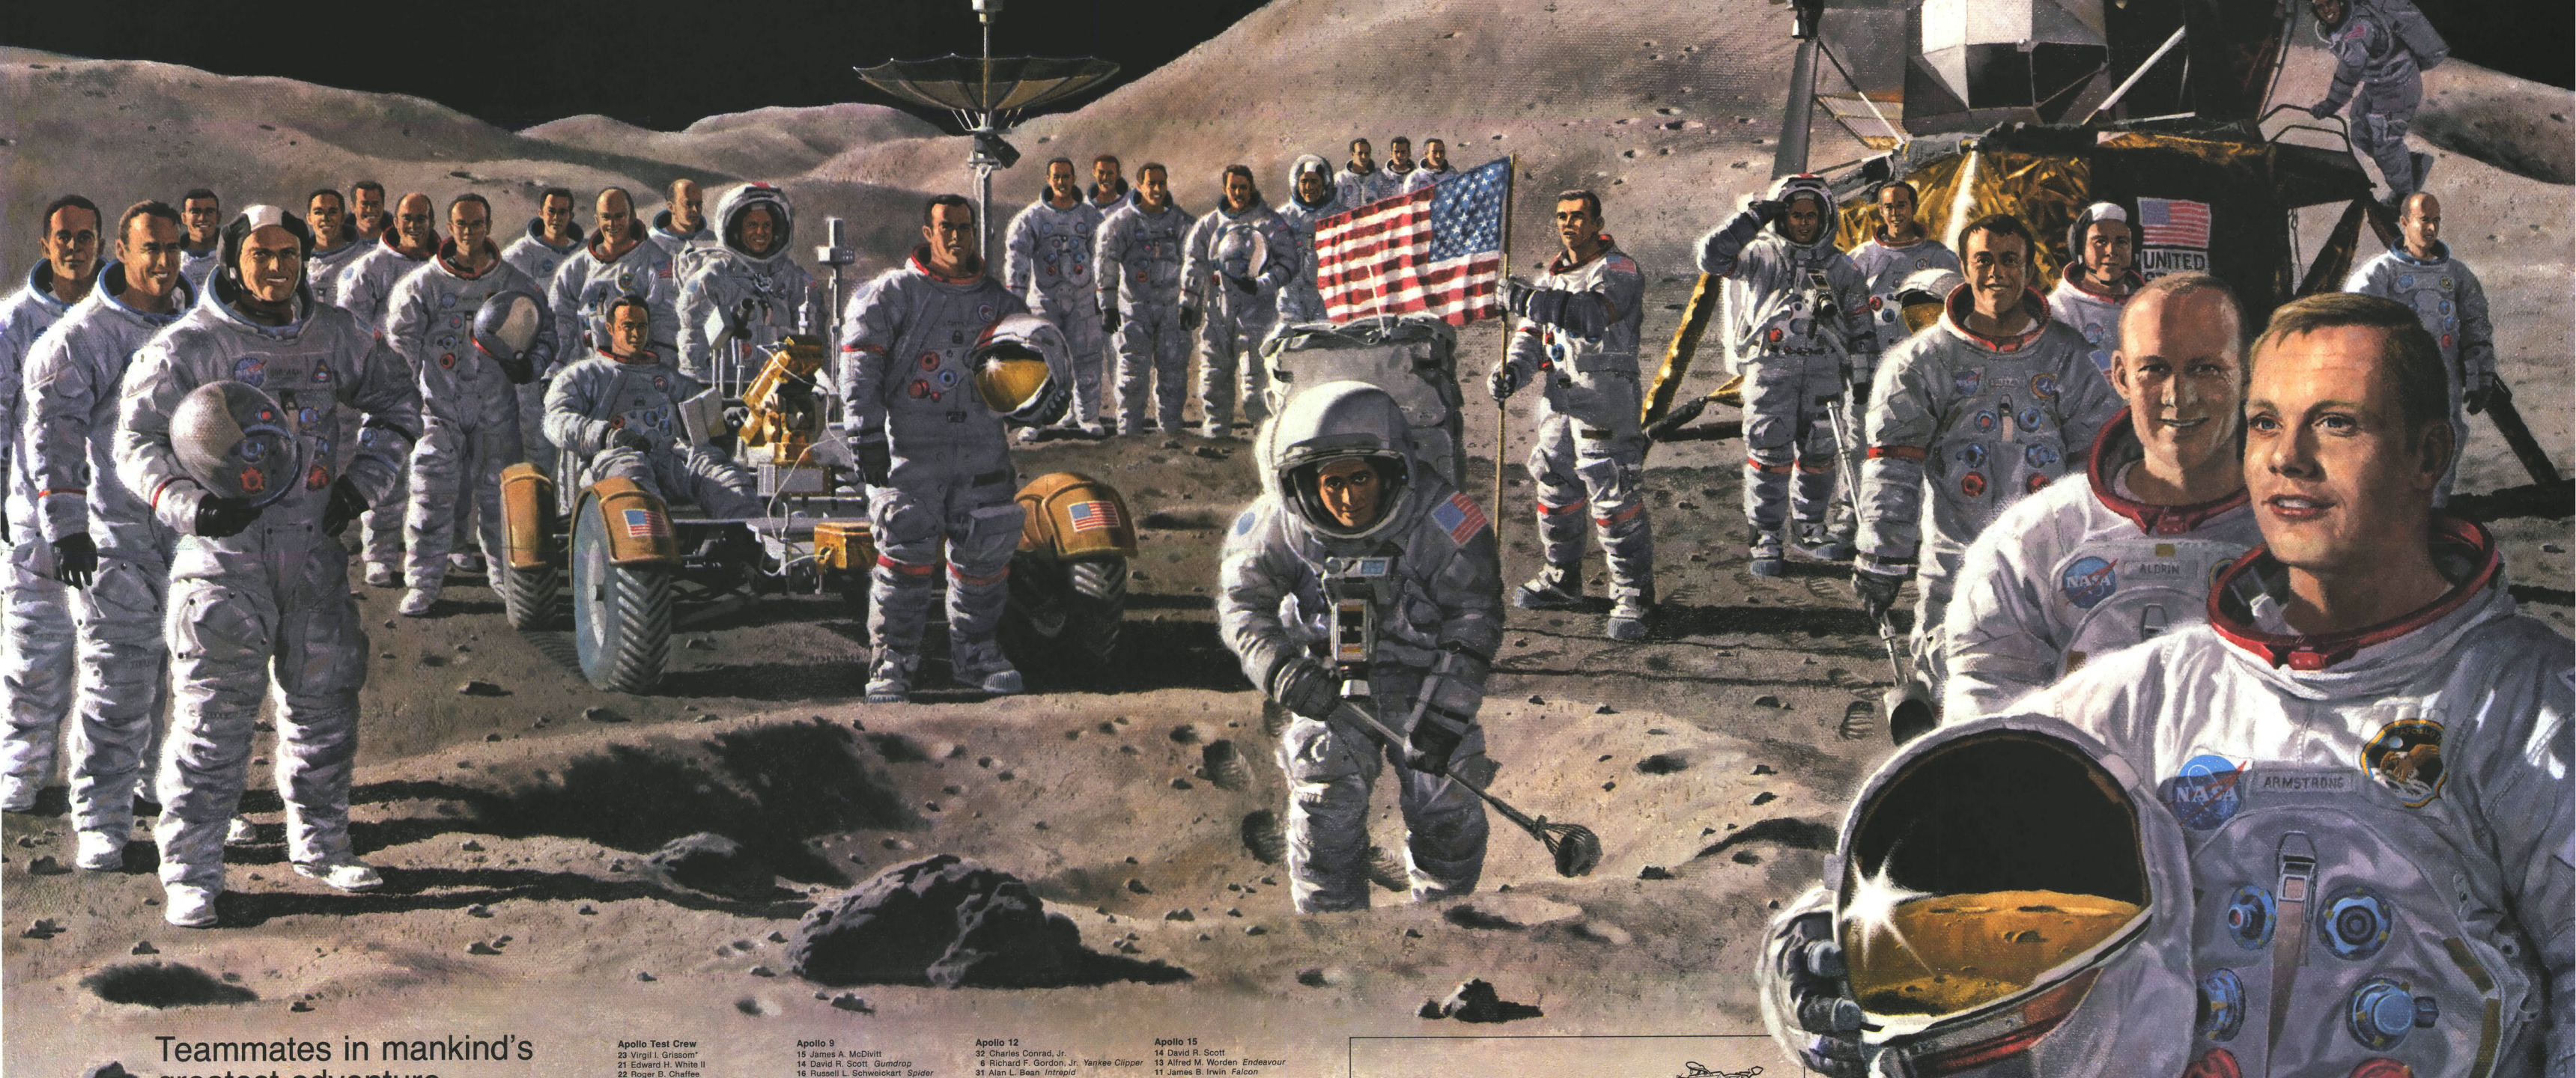 Роналдо в космосе на Луне. The astronauts on the moon